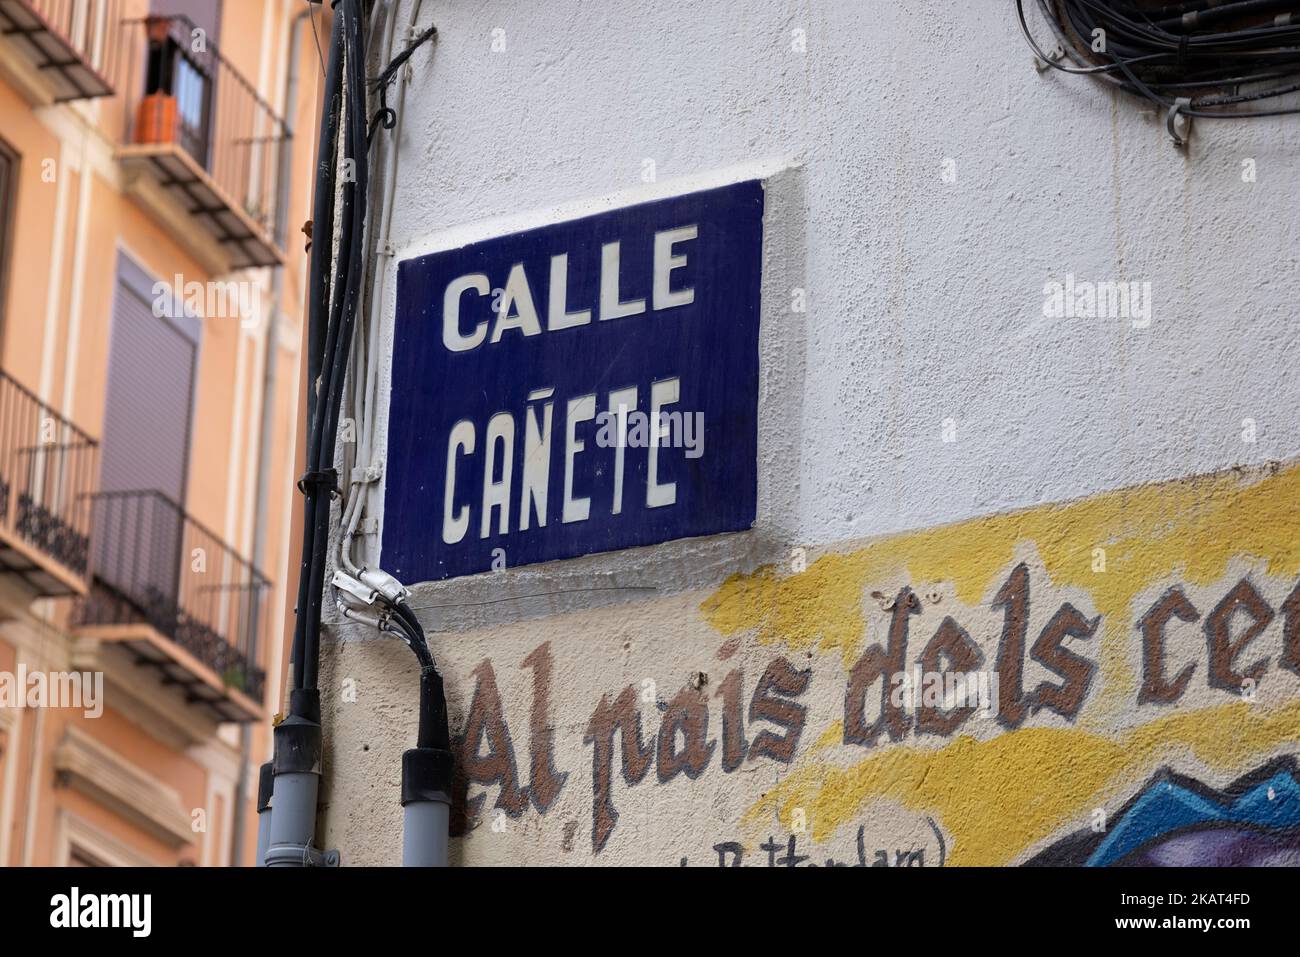 Traditional street name sign, Calle de Cañete, Valencia, Spain Stock Photo